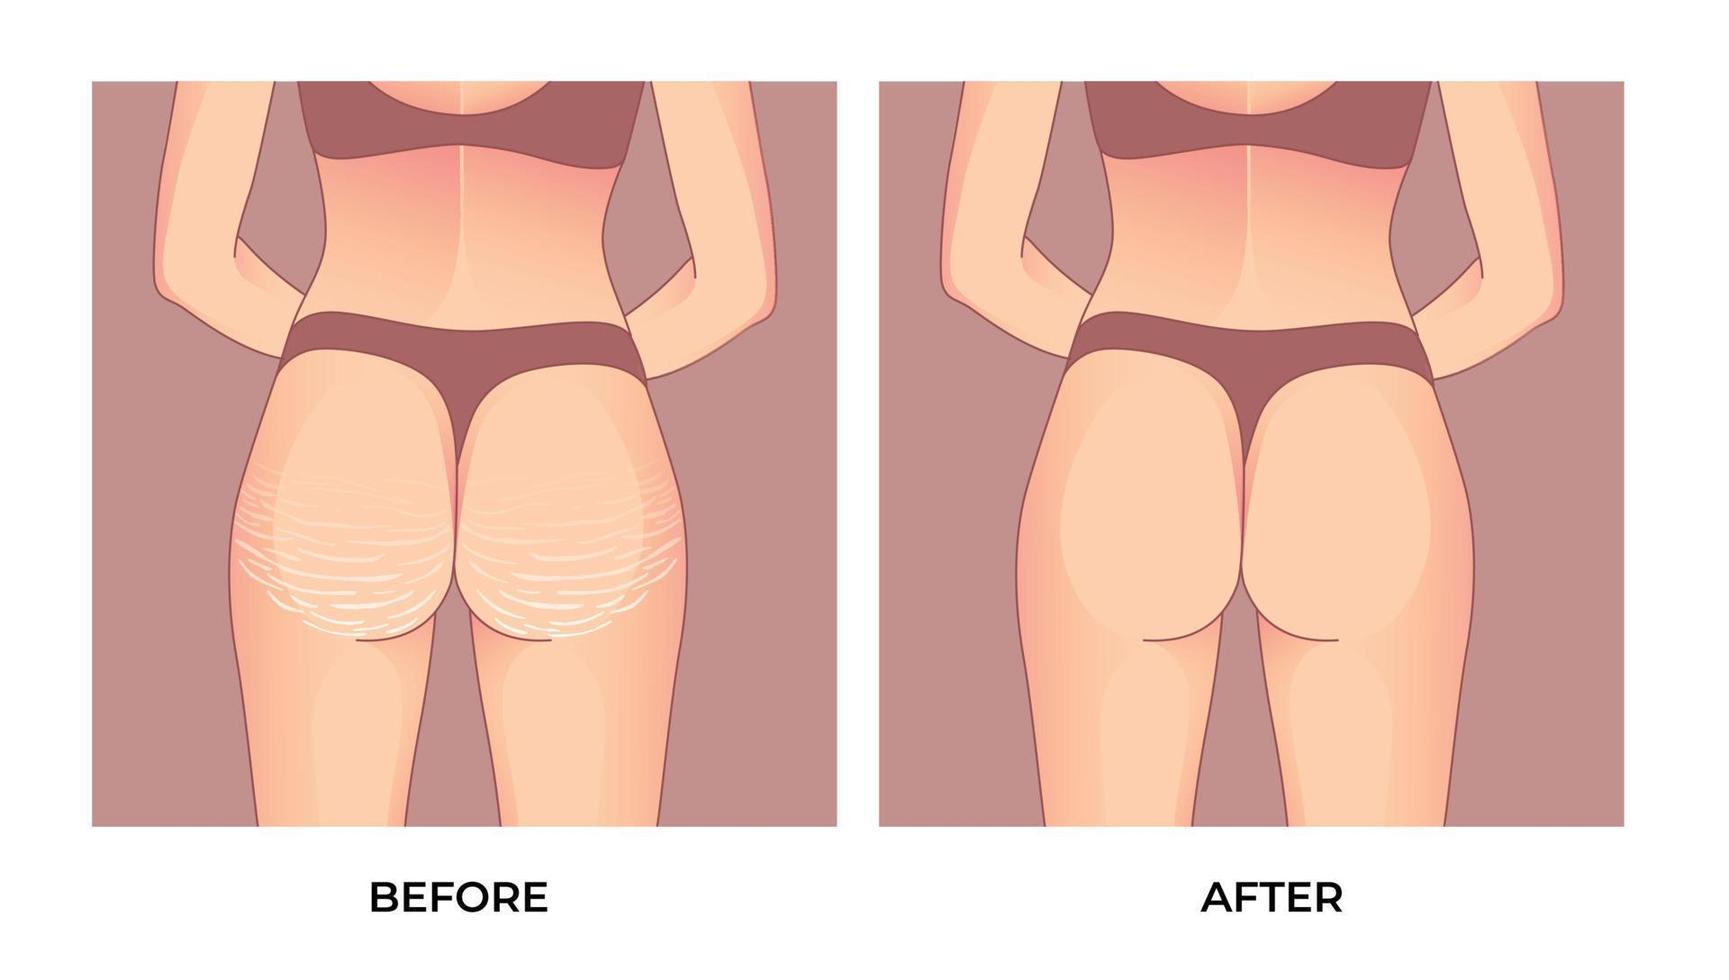 nádegas femininas com estrias antes e depois da braquioplastia, lipoaspiração ou cirurgia plástica, transformação da forma do corpo da mulher, gordura para caber. vetor